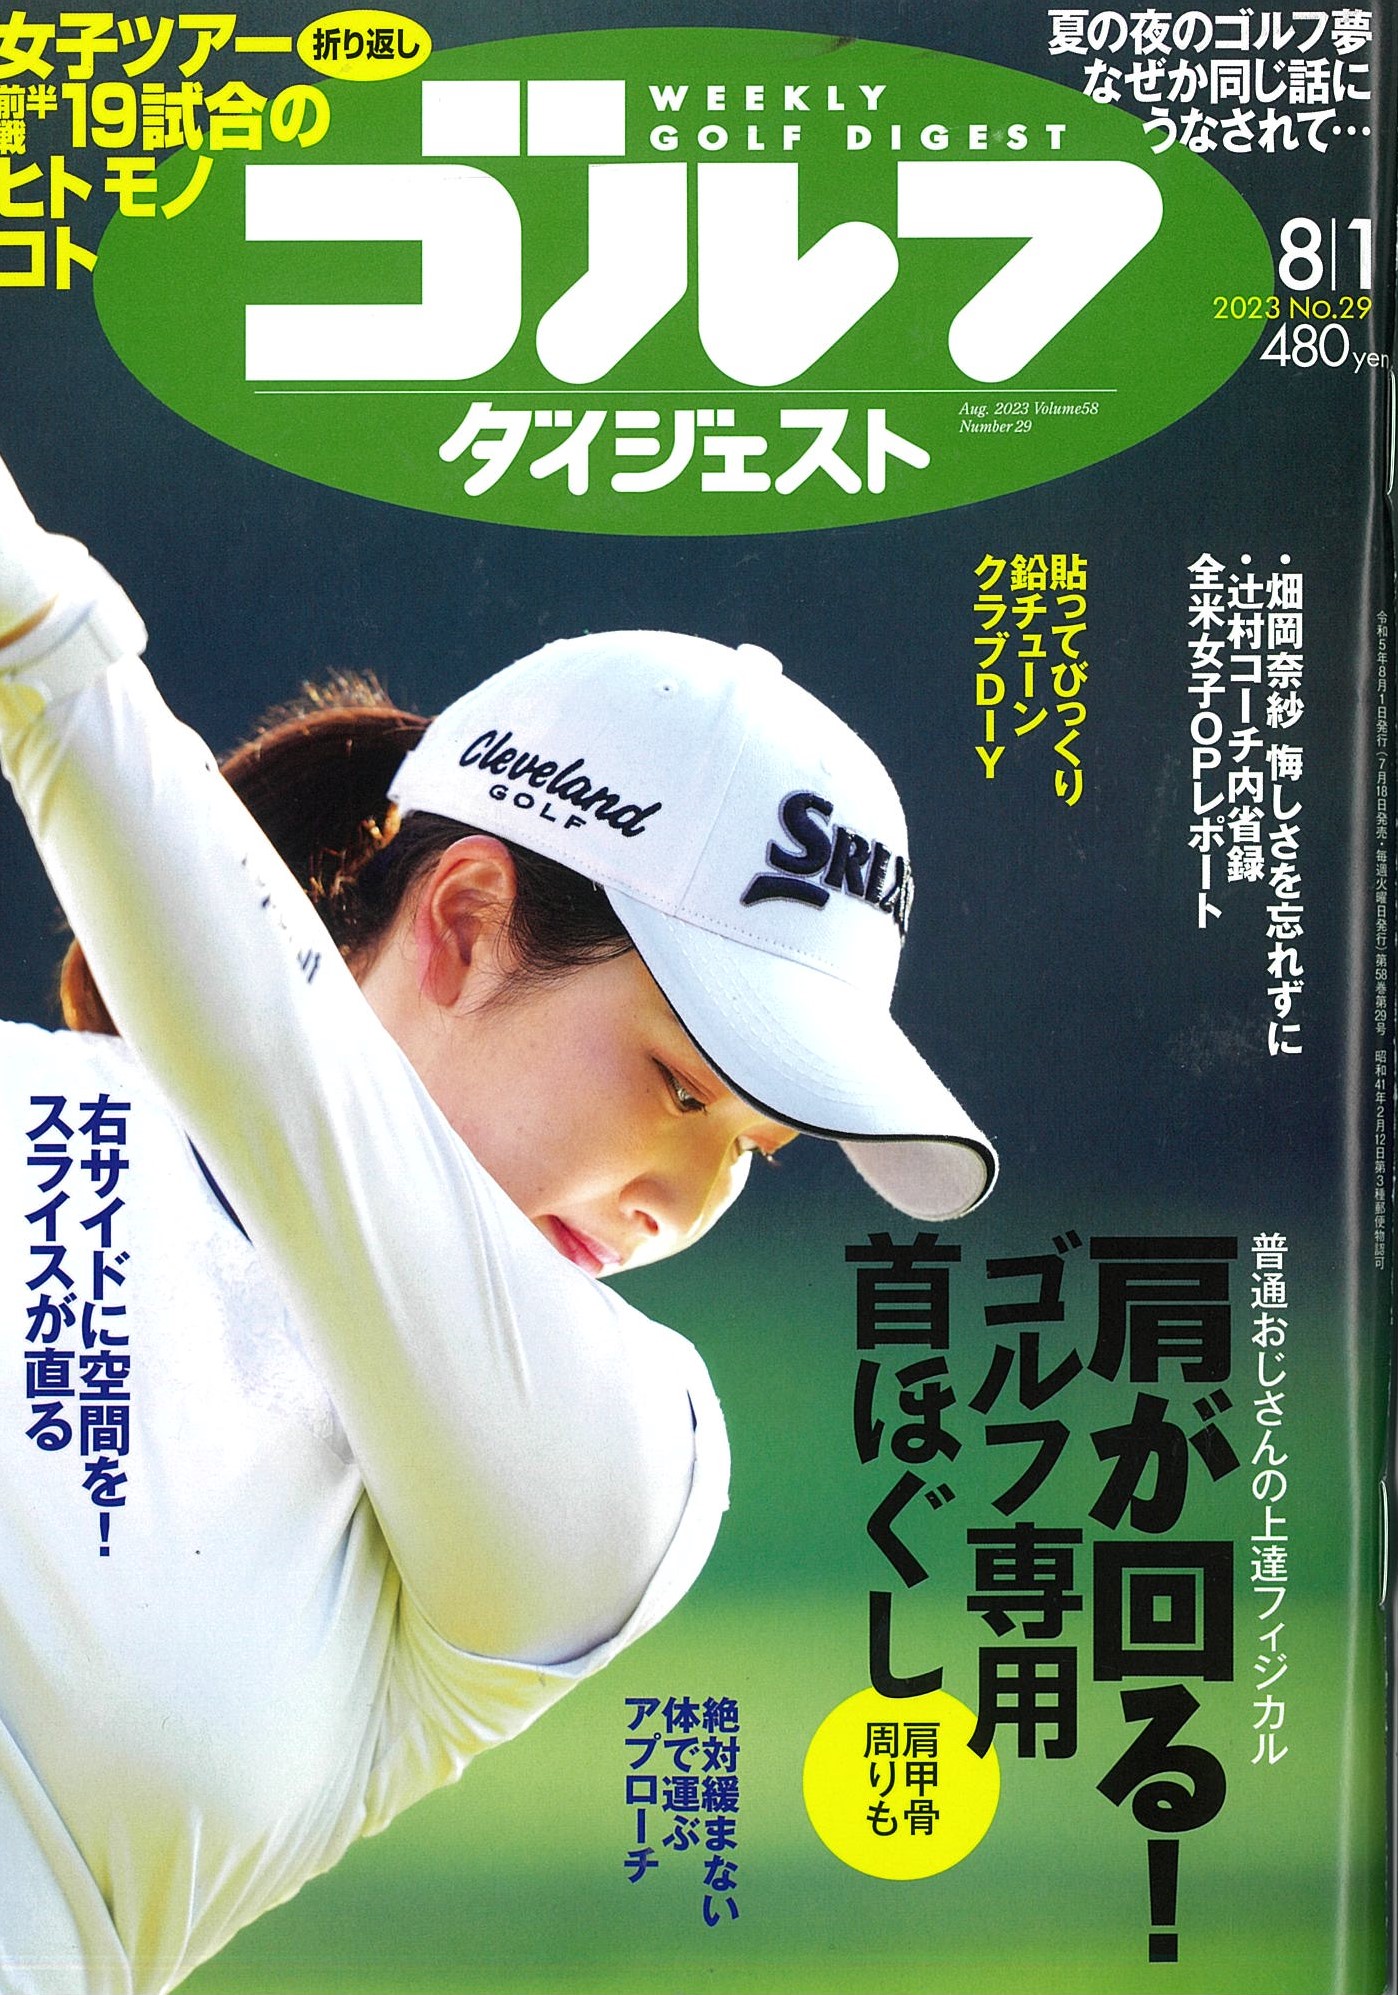 『週刊ゴルフダイジェスト』8月1日号に掲載していただきました!